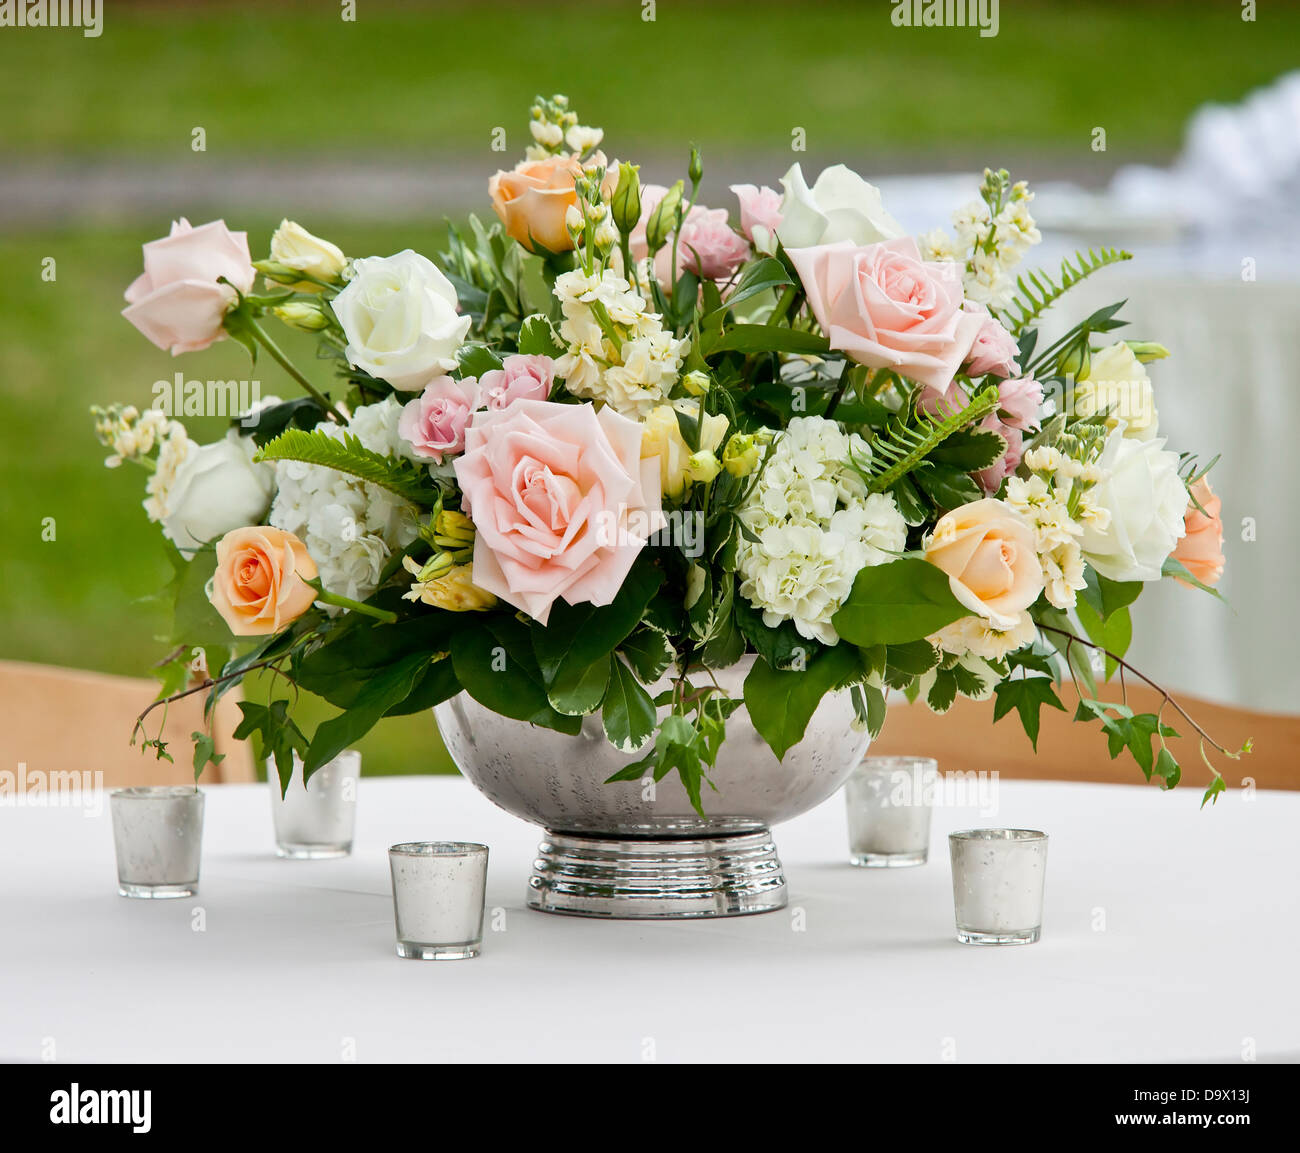 Arrangement de fleurs dans vase avec des roses rose et blanc Banque D'Images